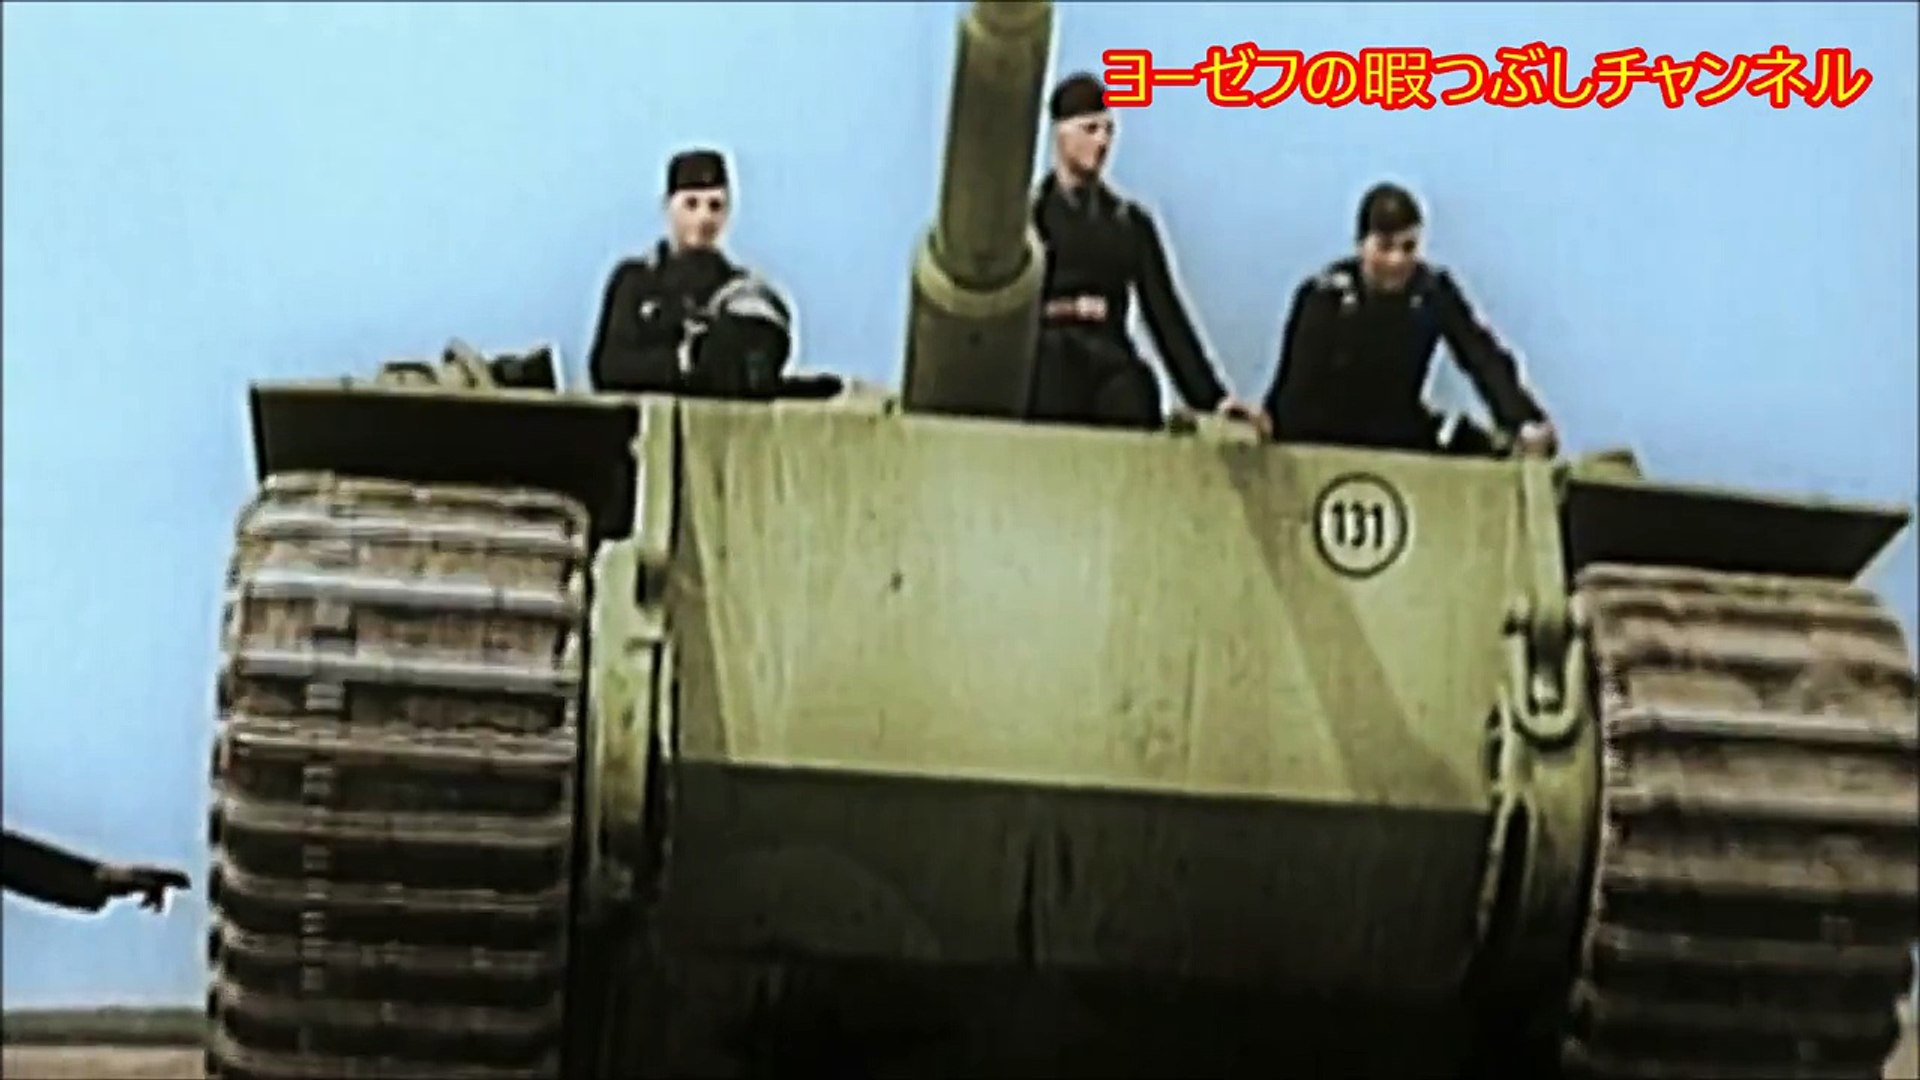 Schwarz ist unser Panzer [ドイツ軍歌] 我らの戦車は黒である - video Dailymotion